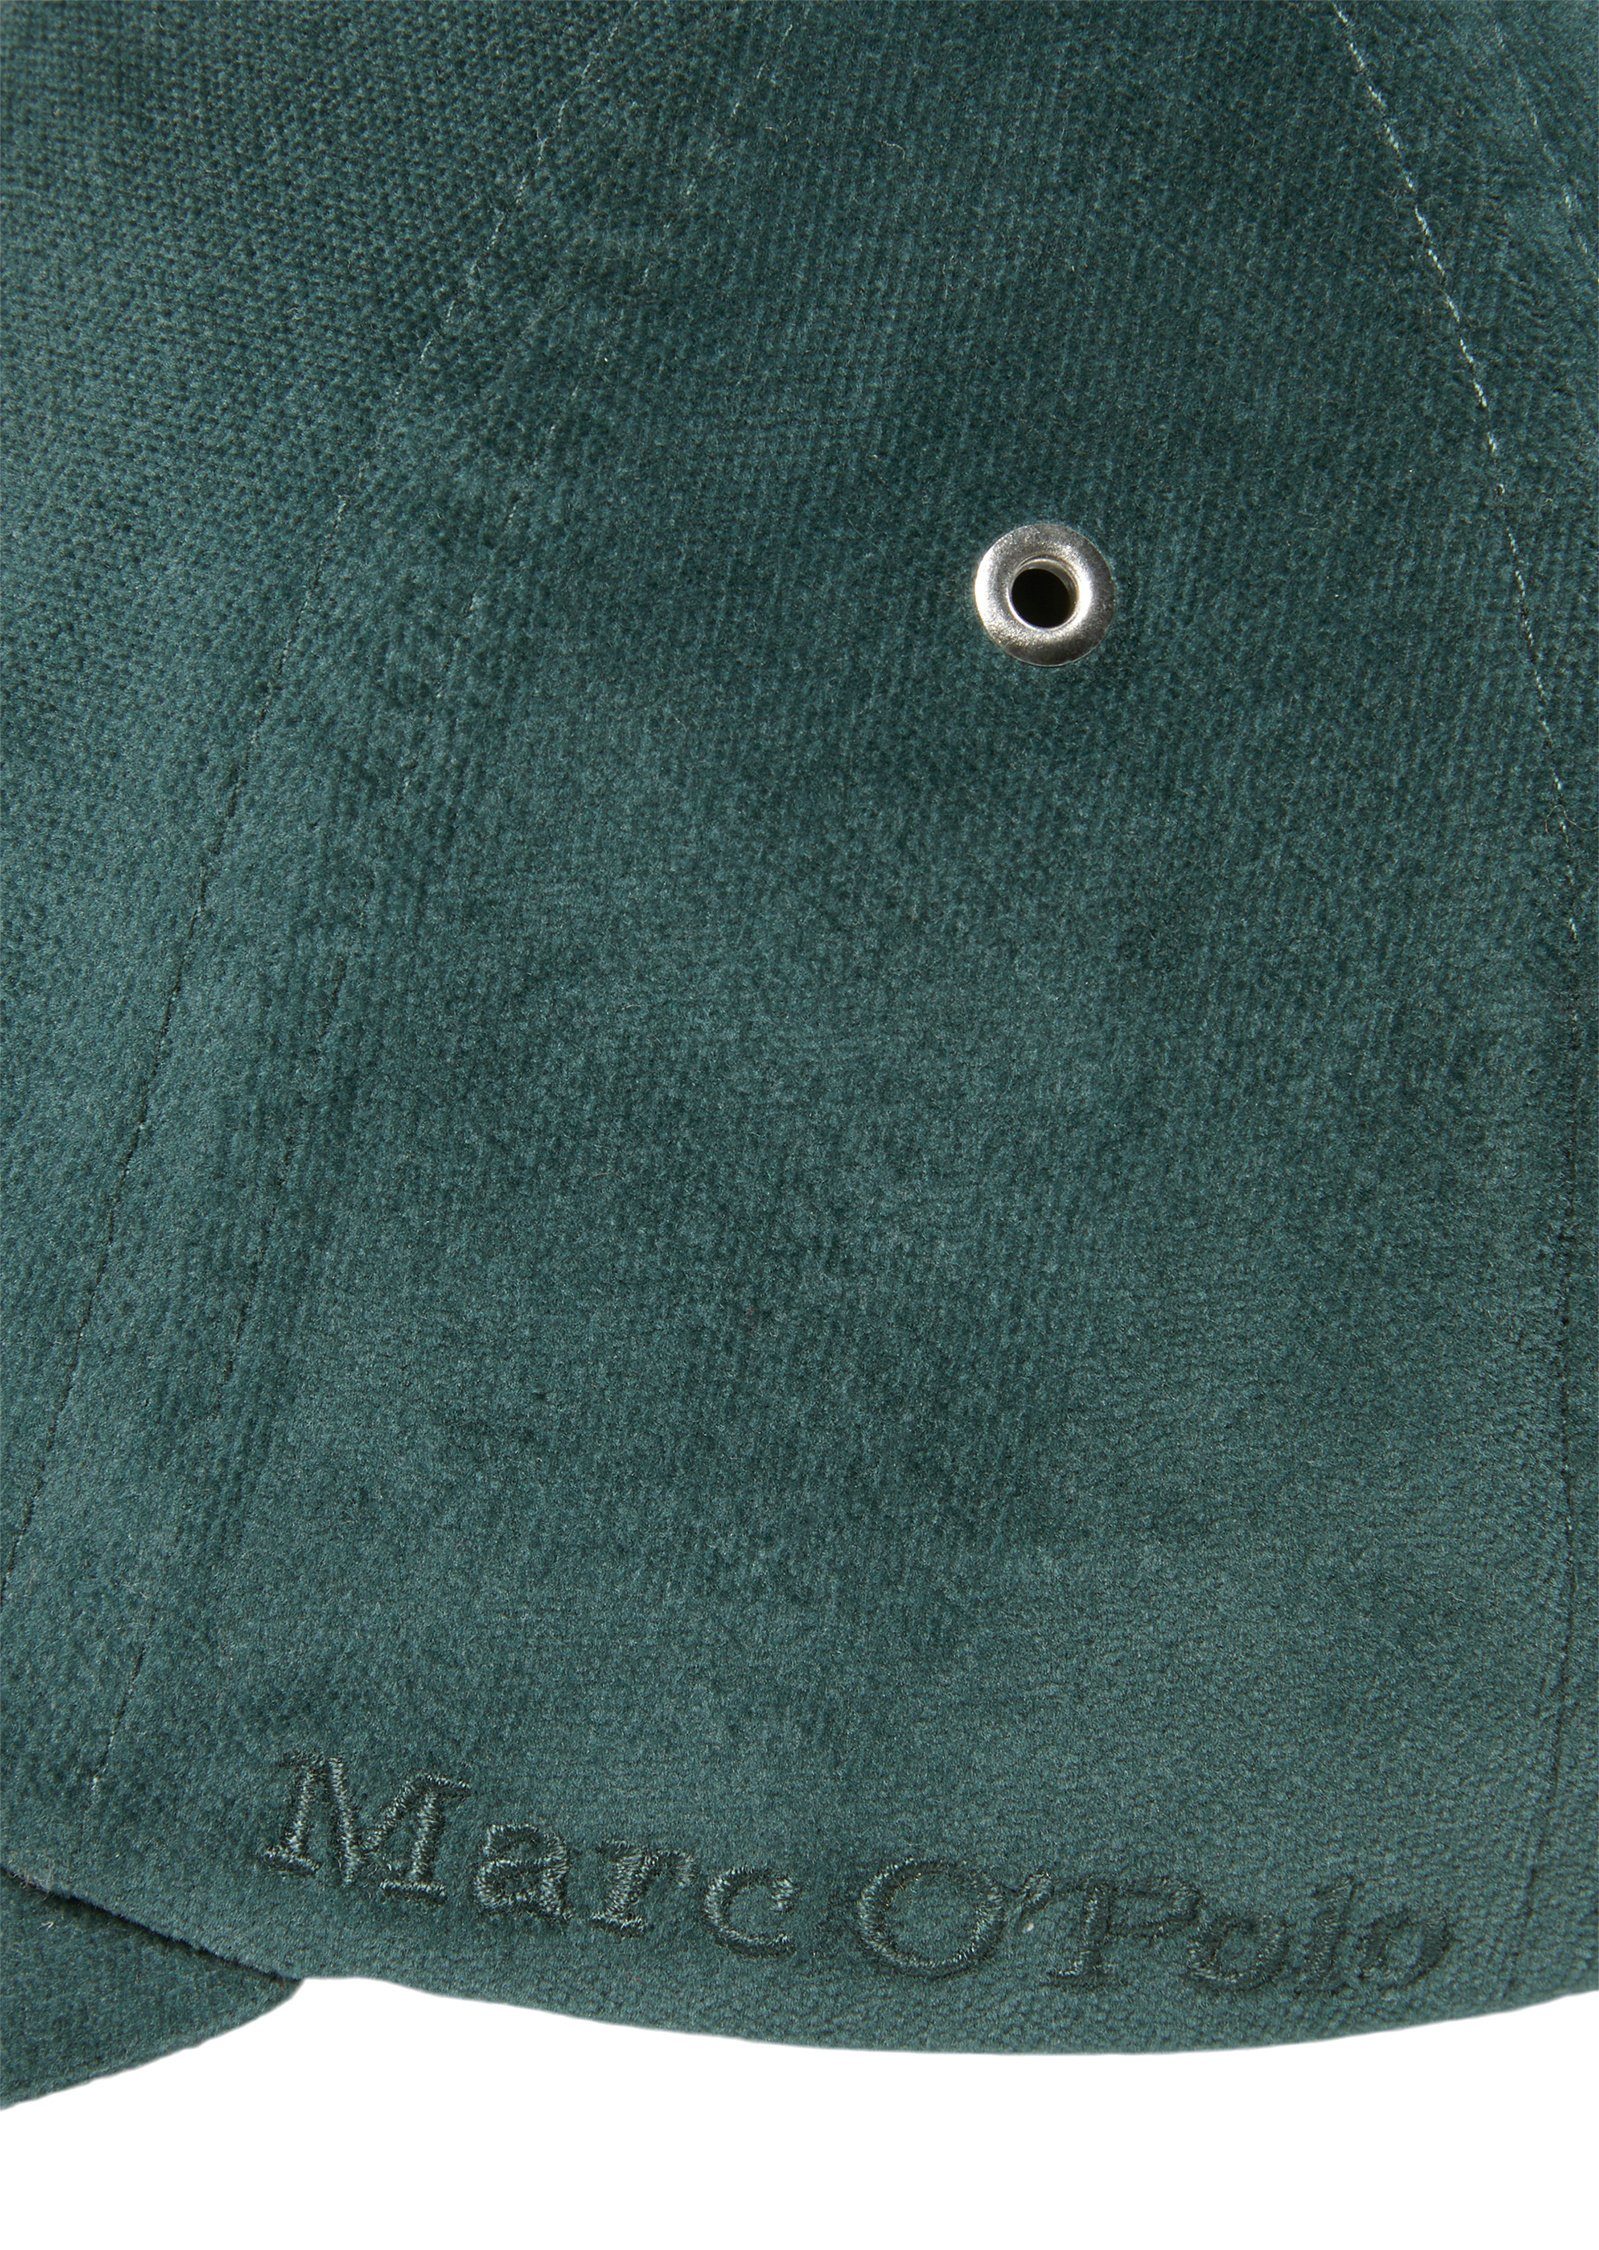 Marc Baseball aus grün O'Polo Organic-Cotton-Lyocell-Mix Cap